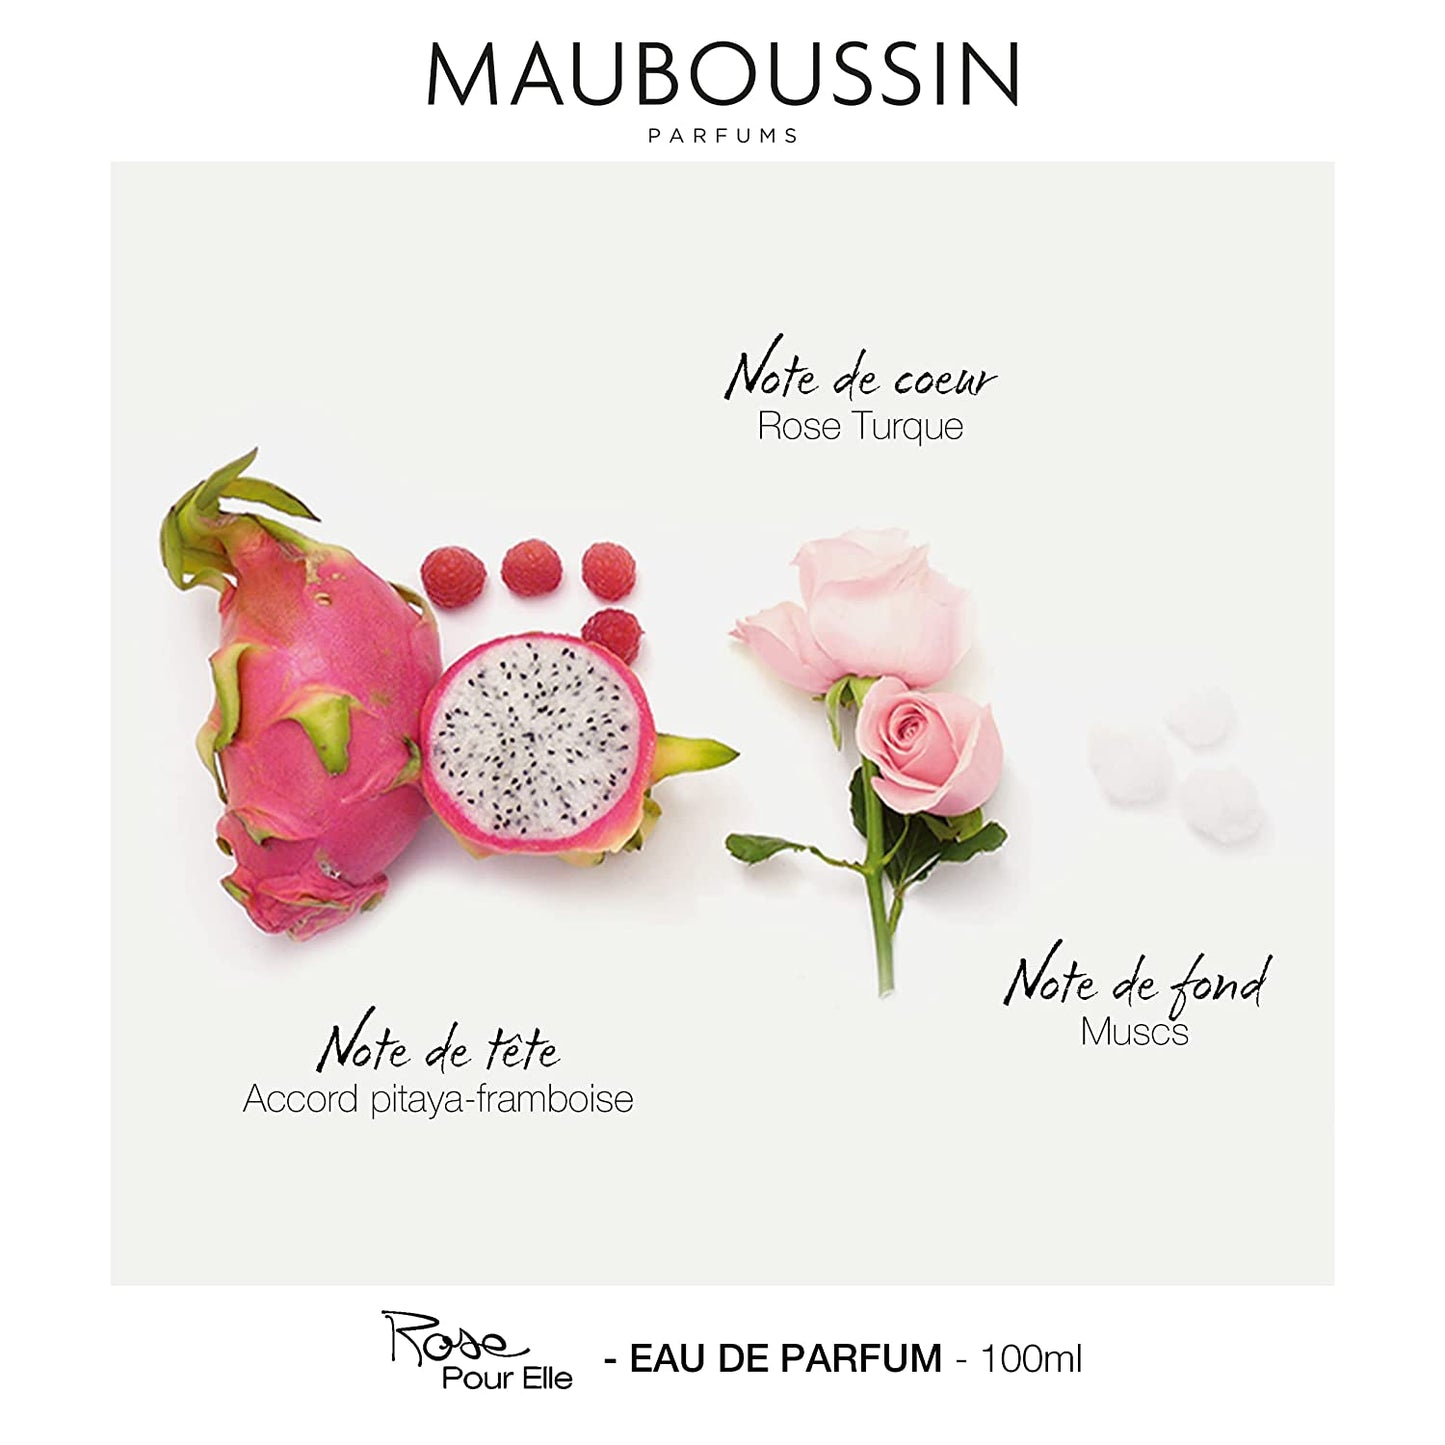 Mauboussin - Rose Pour Elle 100ml (3.3 Fl Oz) - Eau de Parfum for Women - Floral, Fruity & Fresh Scents